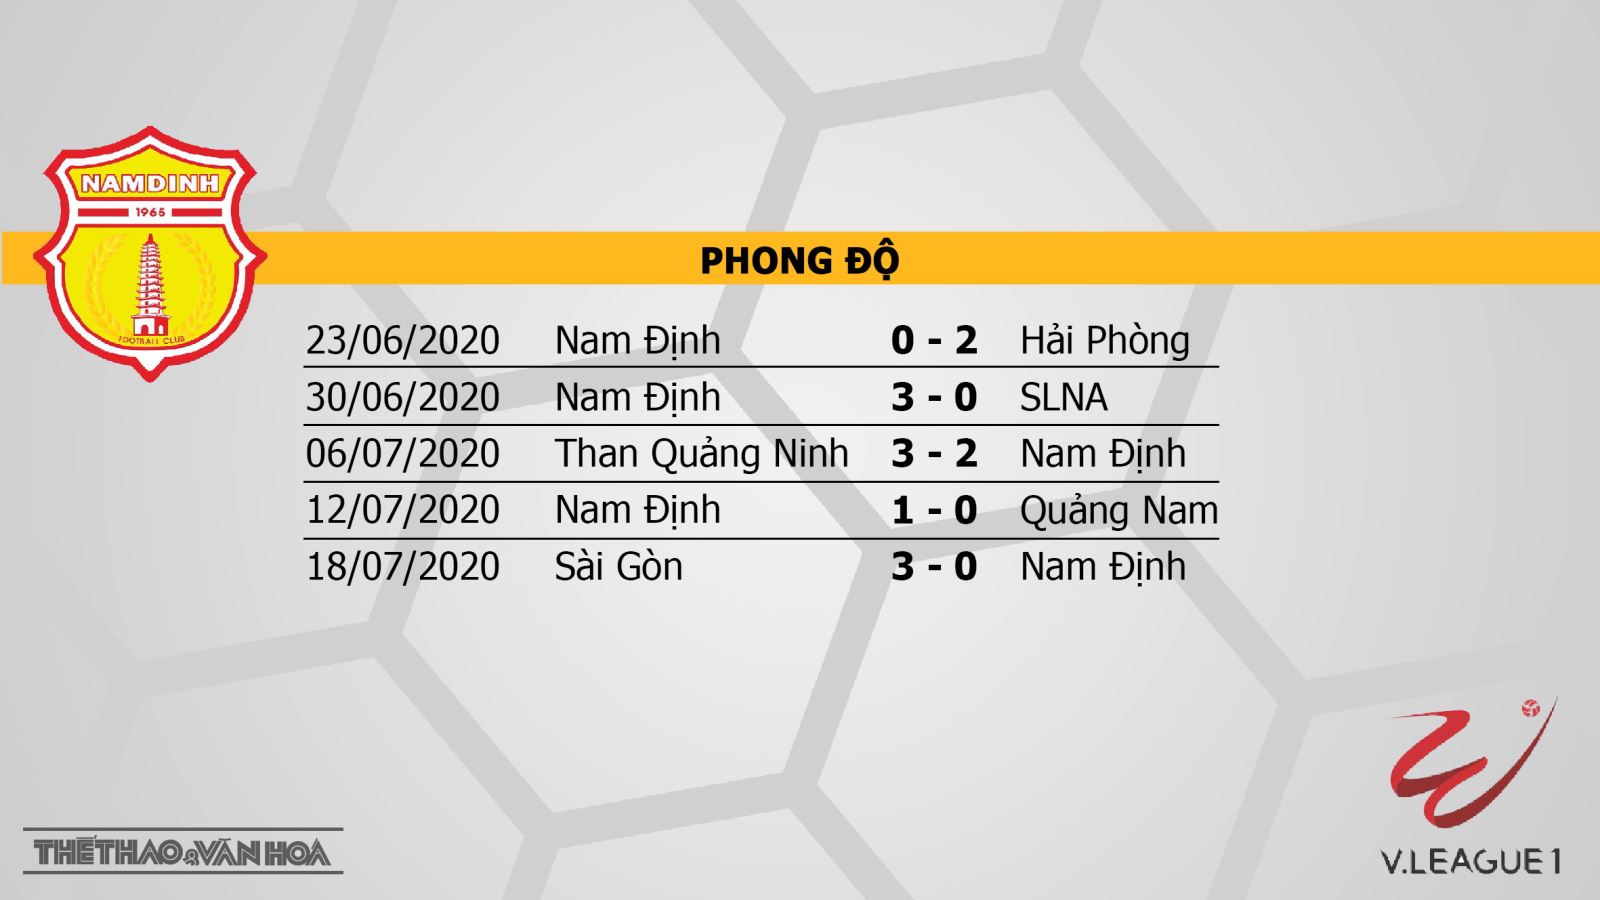 Nam Định vs Bình Dương, nam định, bình dương, nhận định bóng đá Nam Định vs Bình Dương, kèo bóng đá, nhận định bóng đá, trực tiếp Nam Định vs Bình Dương